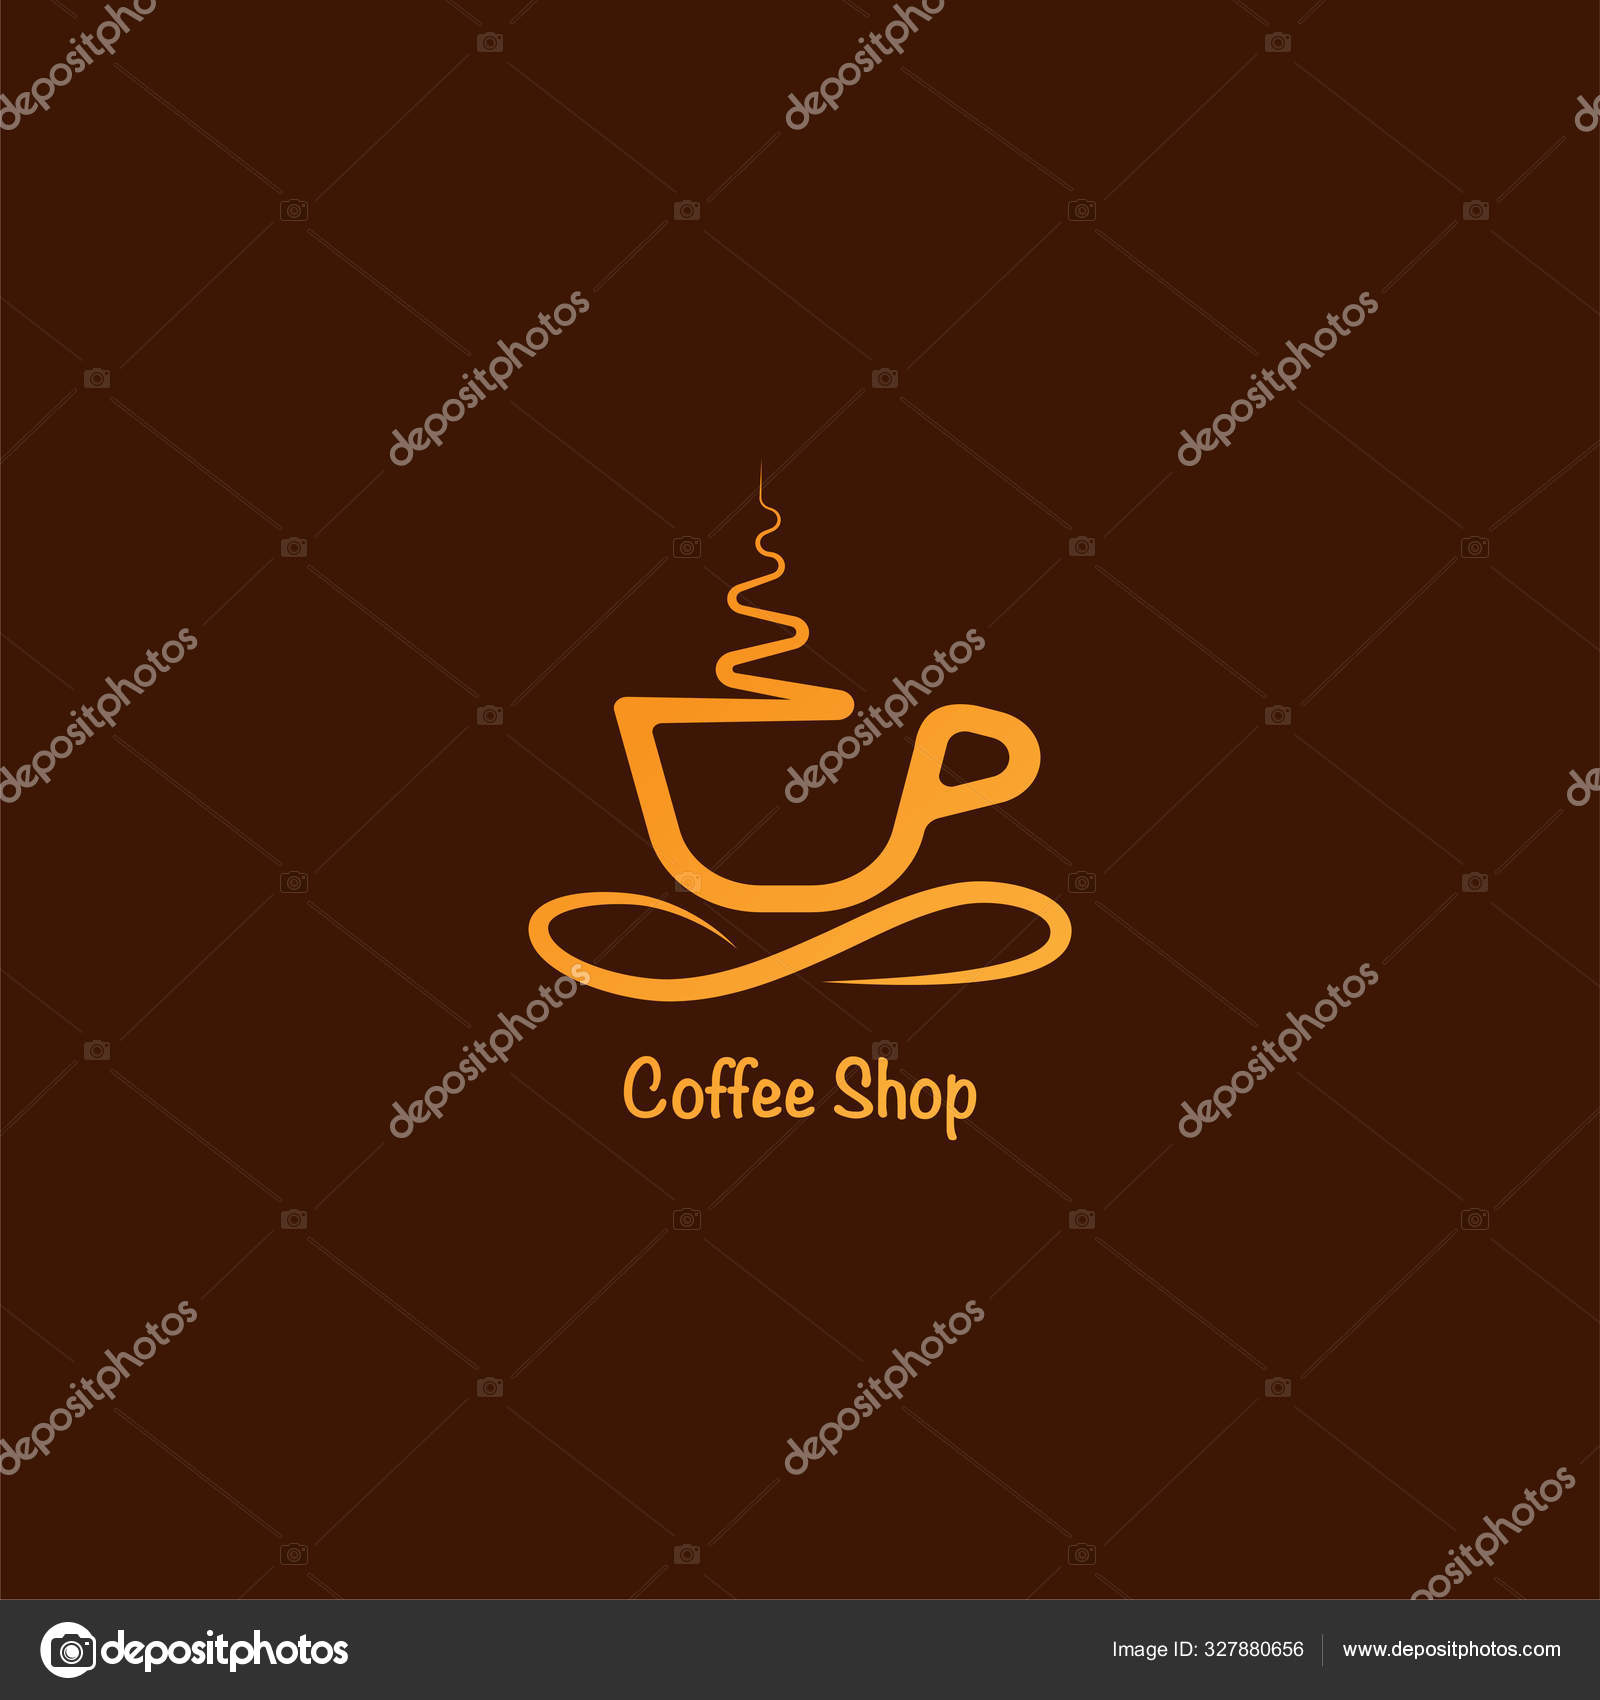 Delta cafe logo design concept template Royalty Free Vector